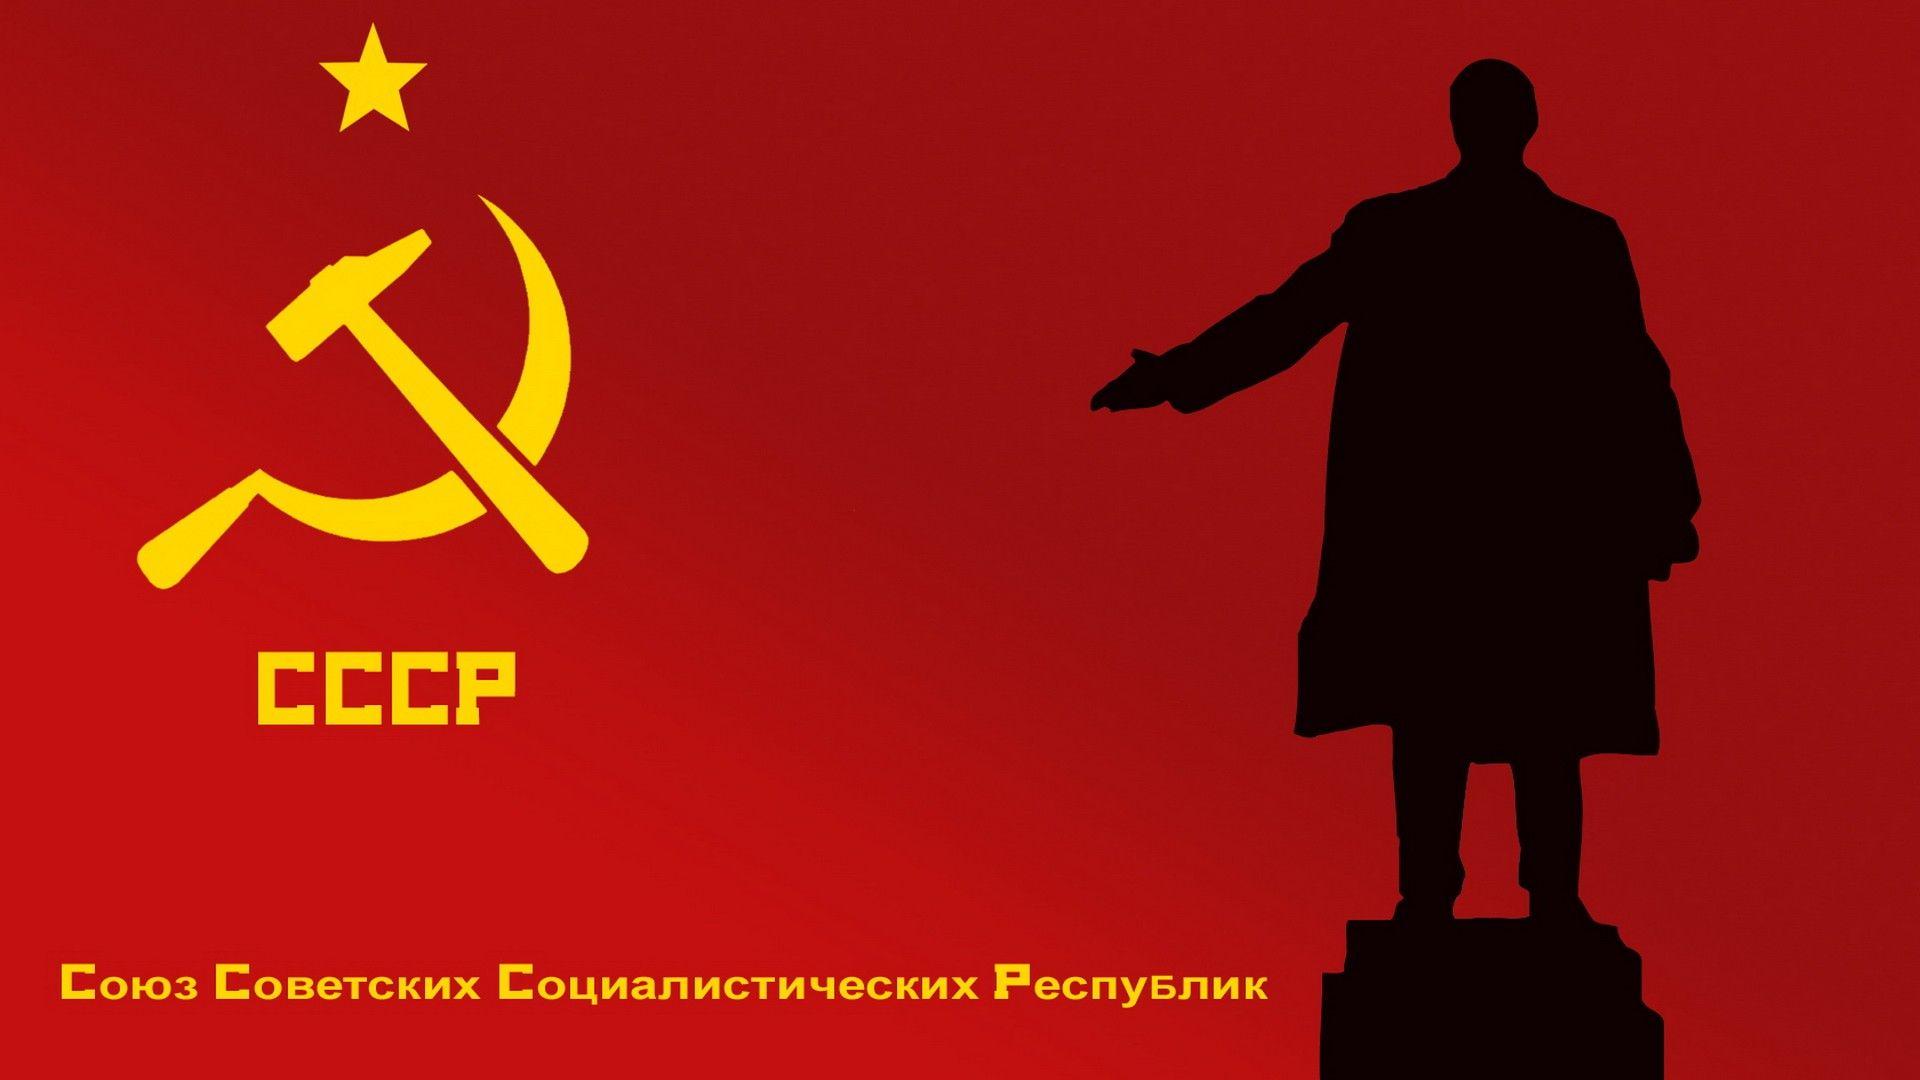 Wallpaper For > Lenin Wallpaper